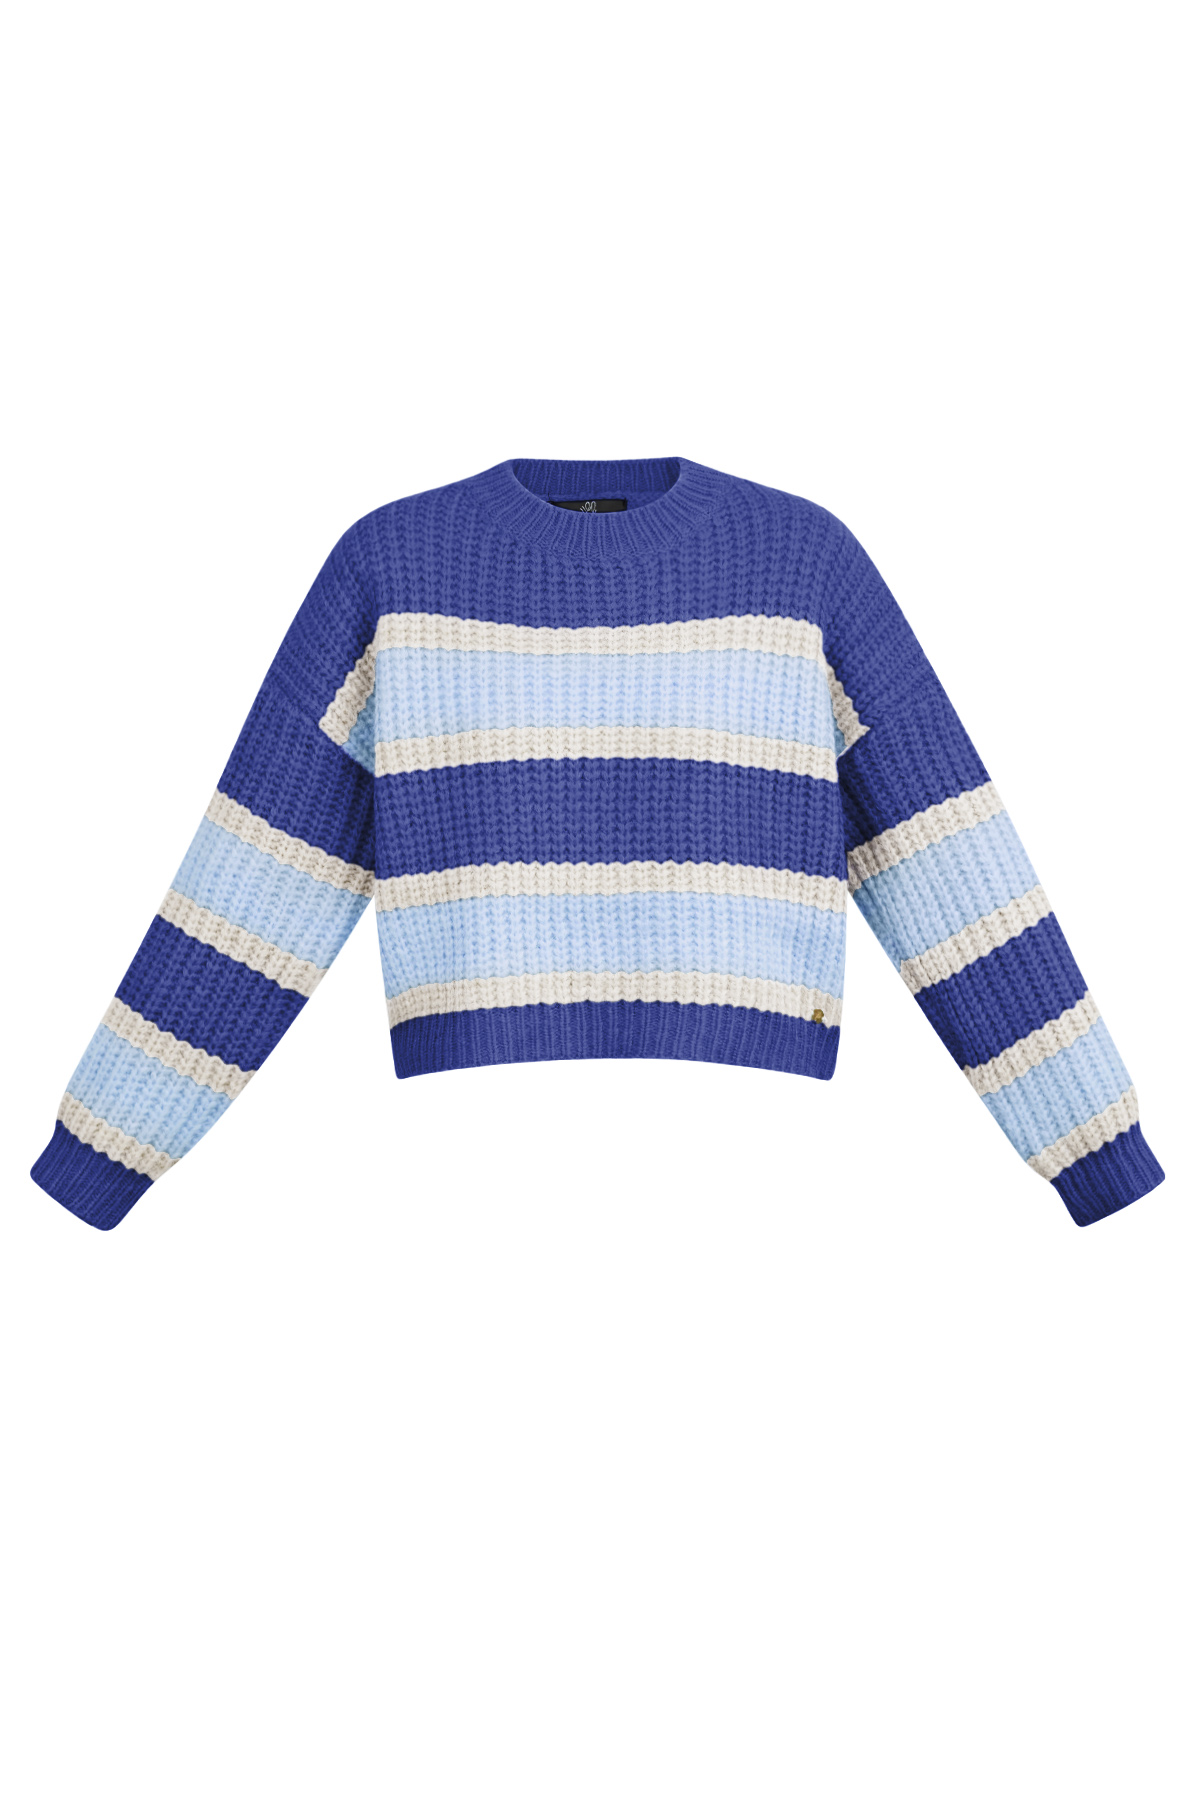 Gestrickter dreifarbiger Pullover mit Streifen – blau